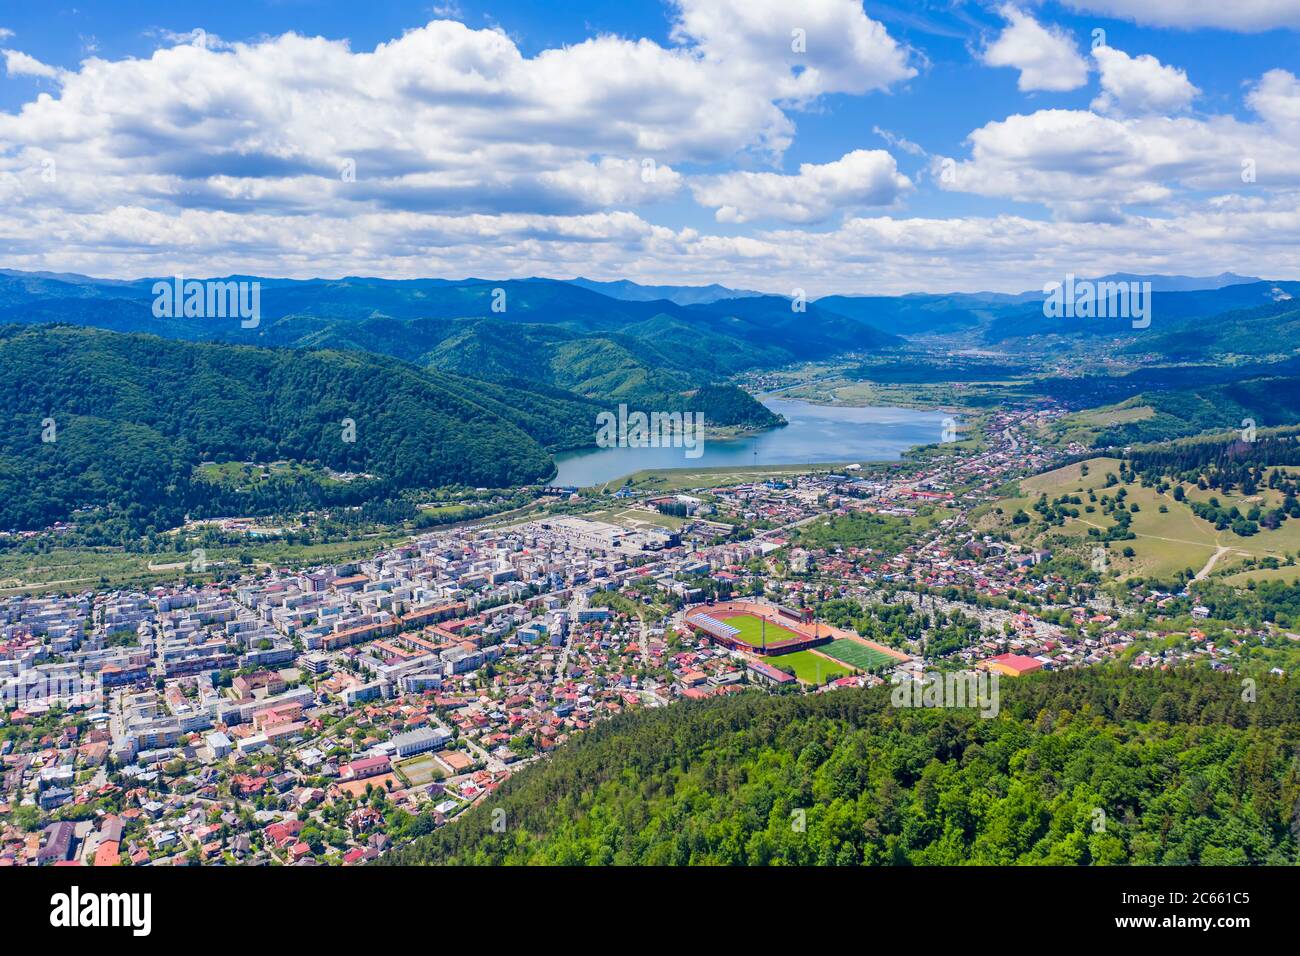 Vue aérienne de la ville de montagne en Roumanie, paysage d'été de la ville de Piatra Neamt dans une belle région Banque D'Images